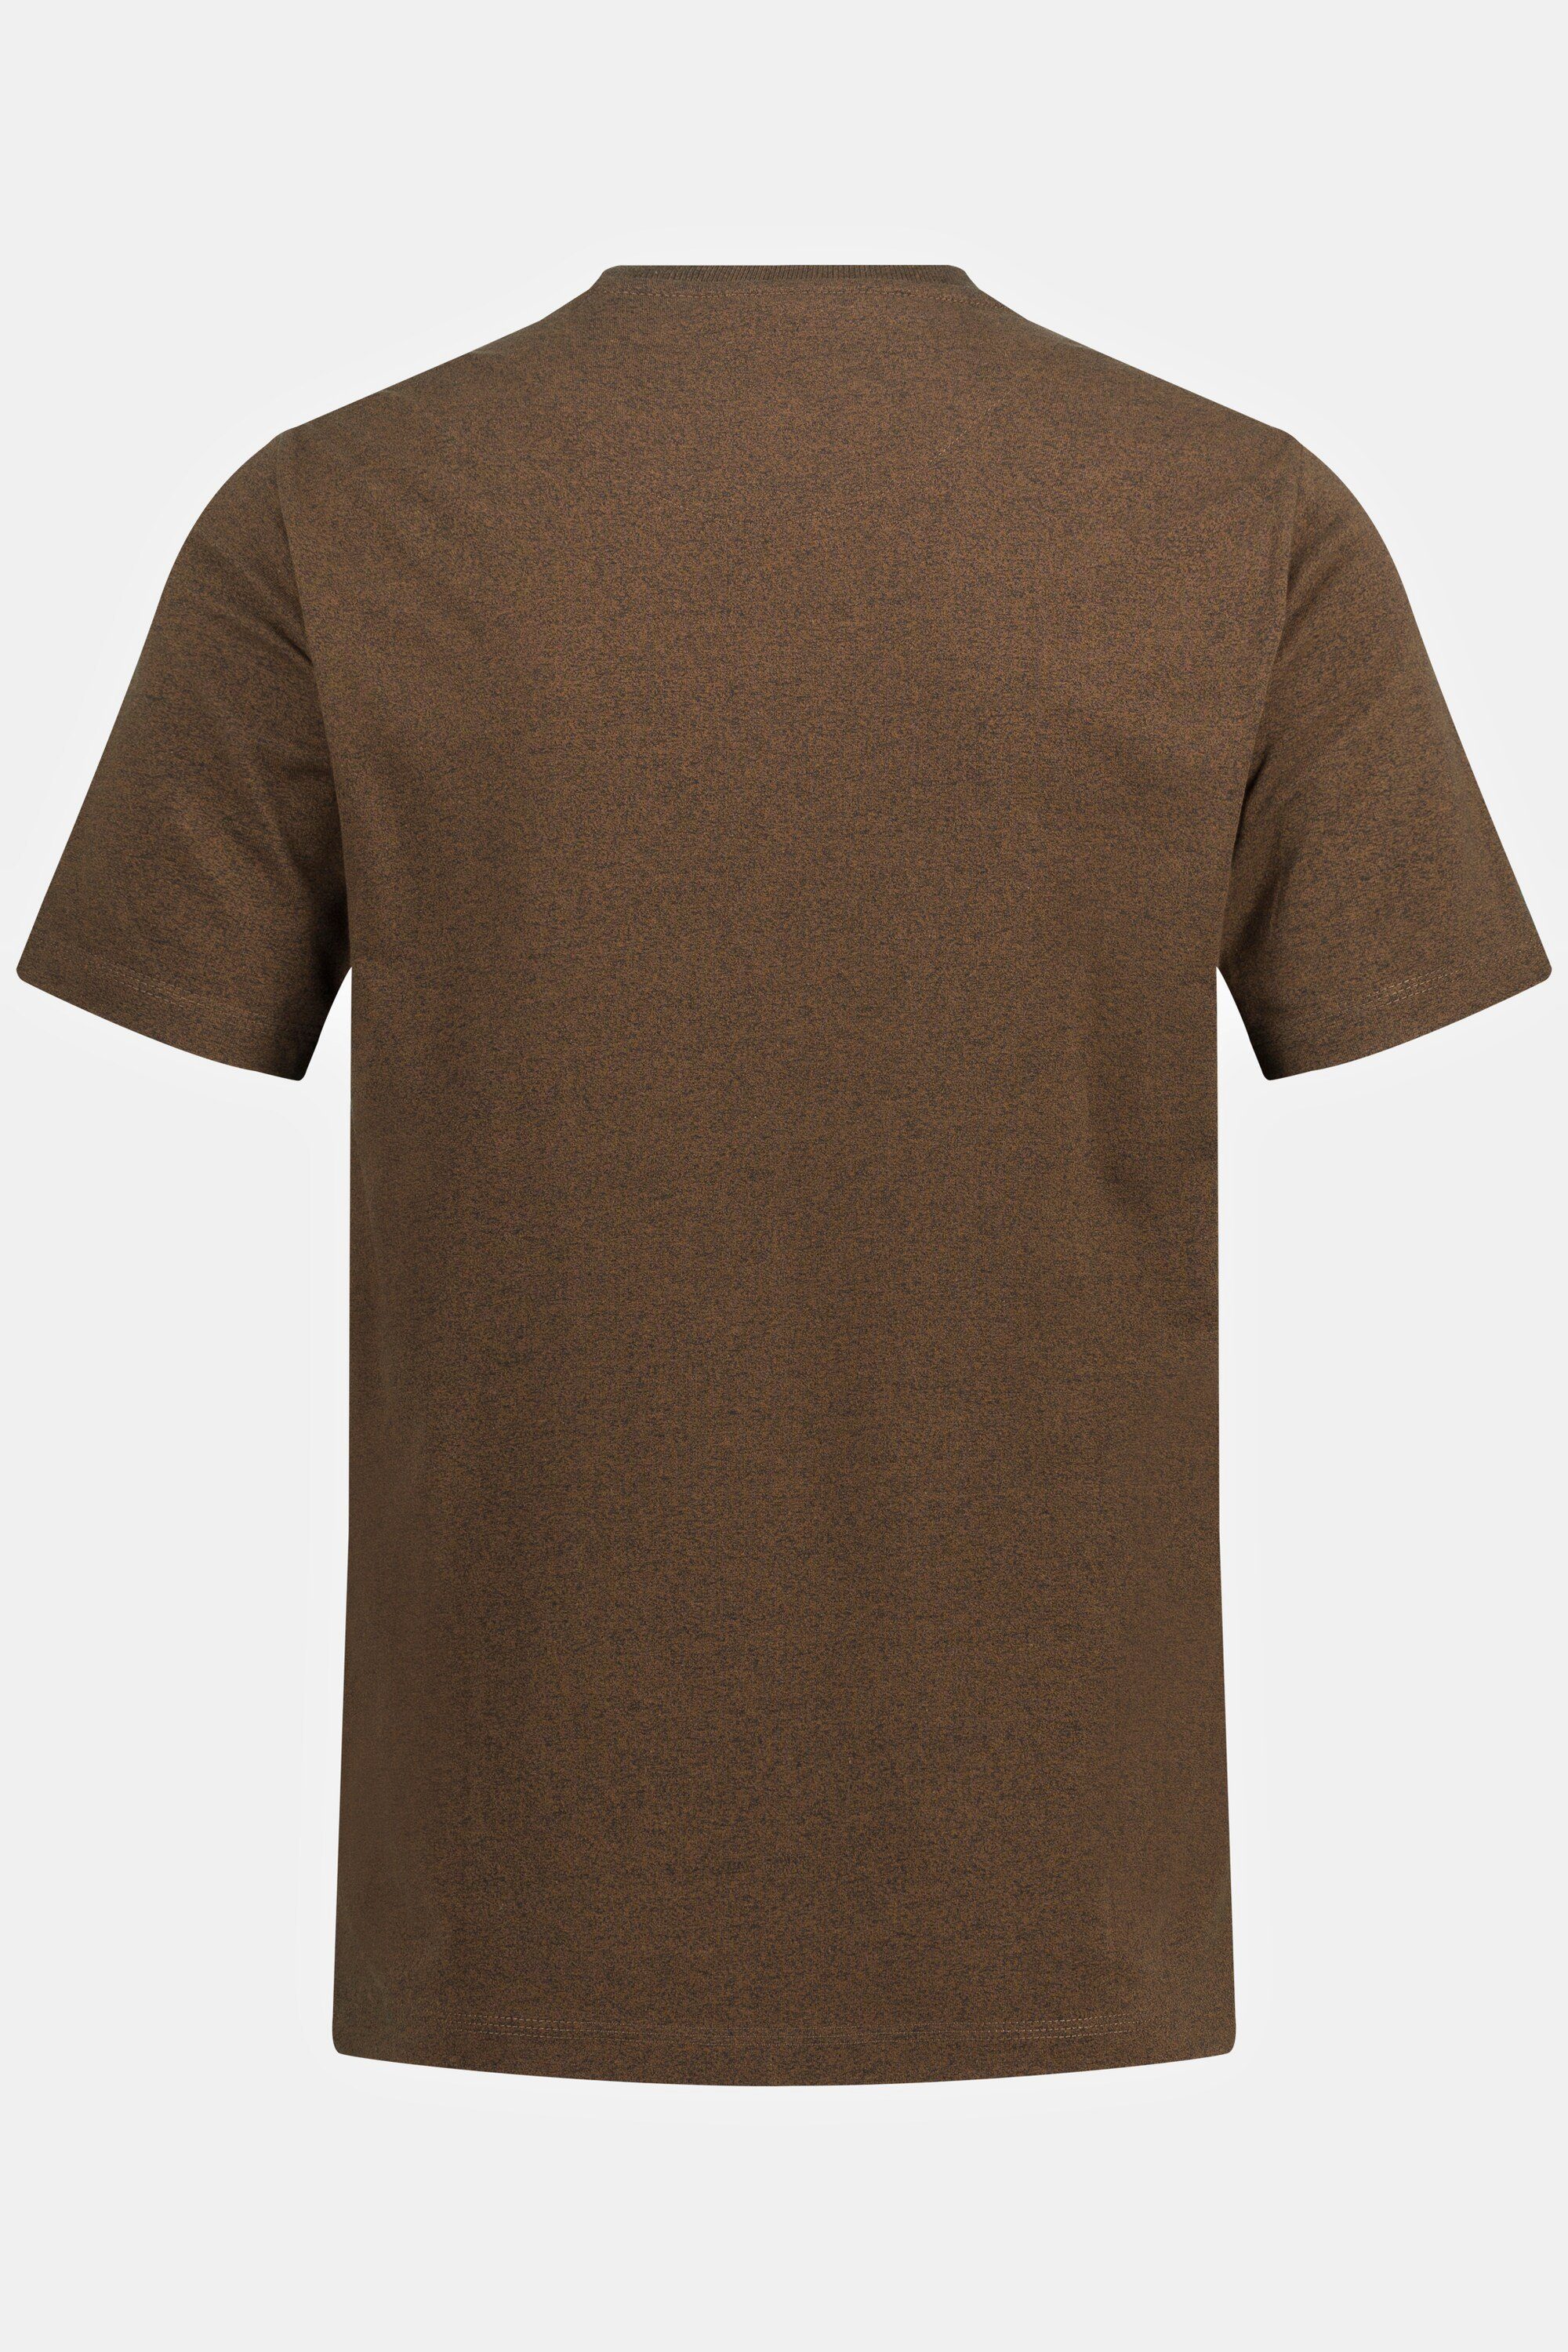 JP1880 T-Shirt T-Shirt Halbarm Brusttasche Rundhals braun